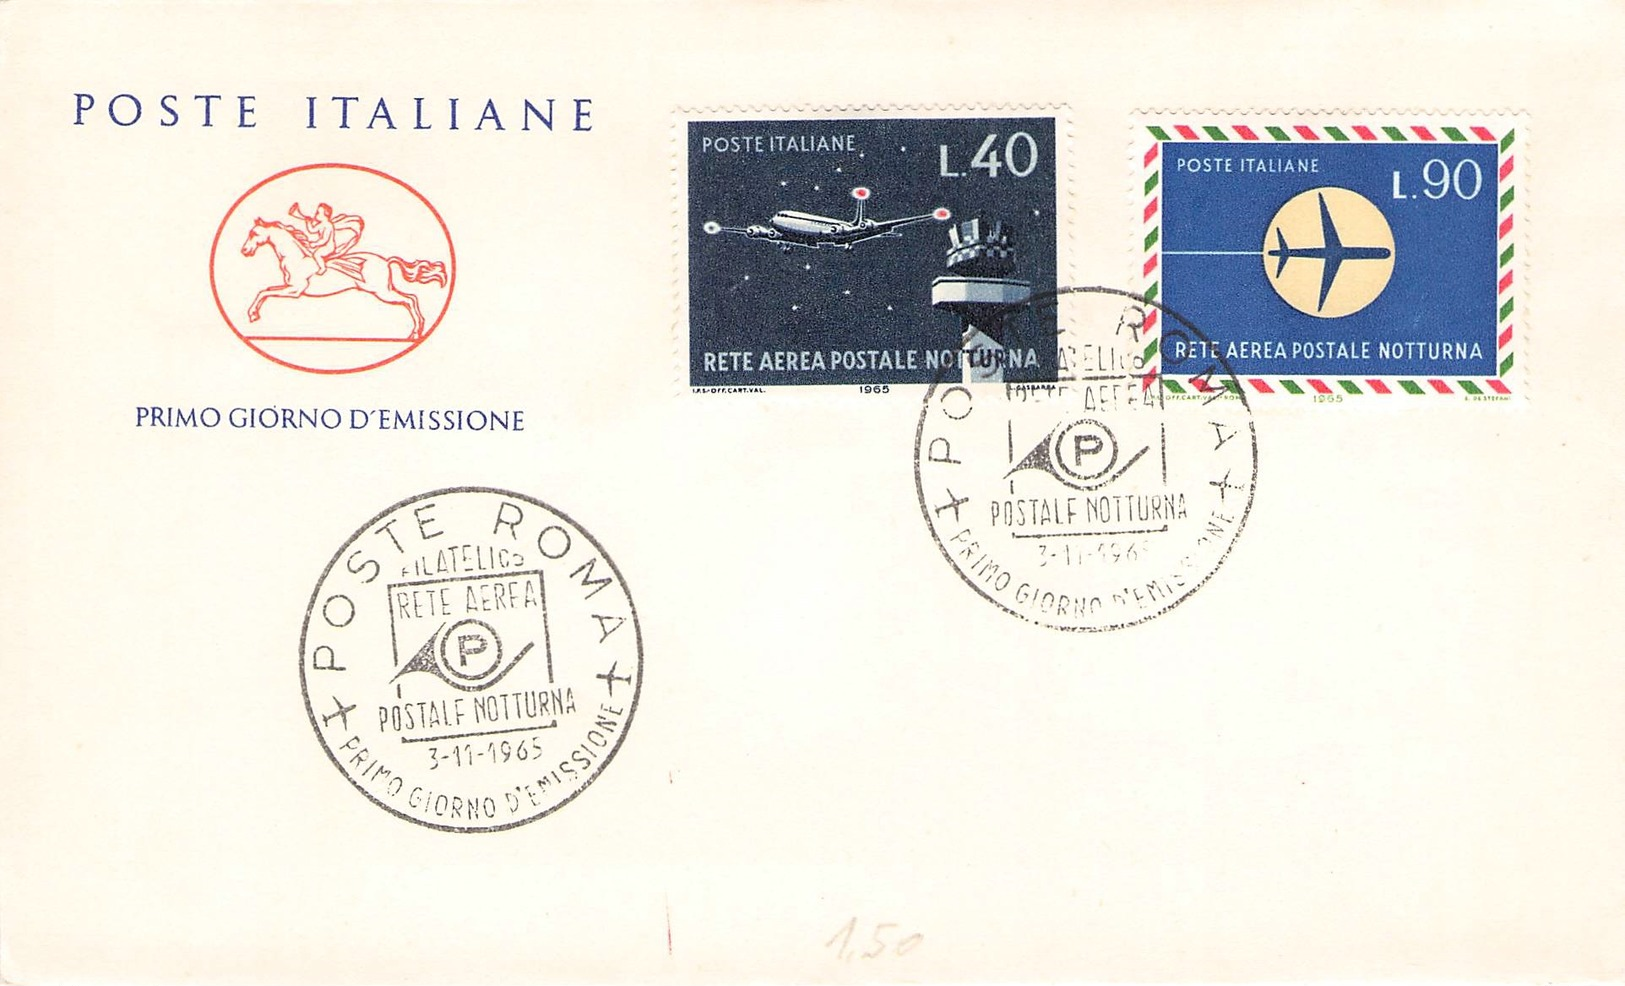 ITALIEN - FDC 1965 RETE AEREA POSTALE Mi #1193-1194 - FDC